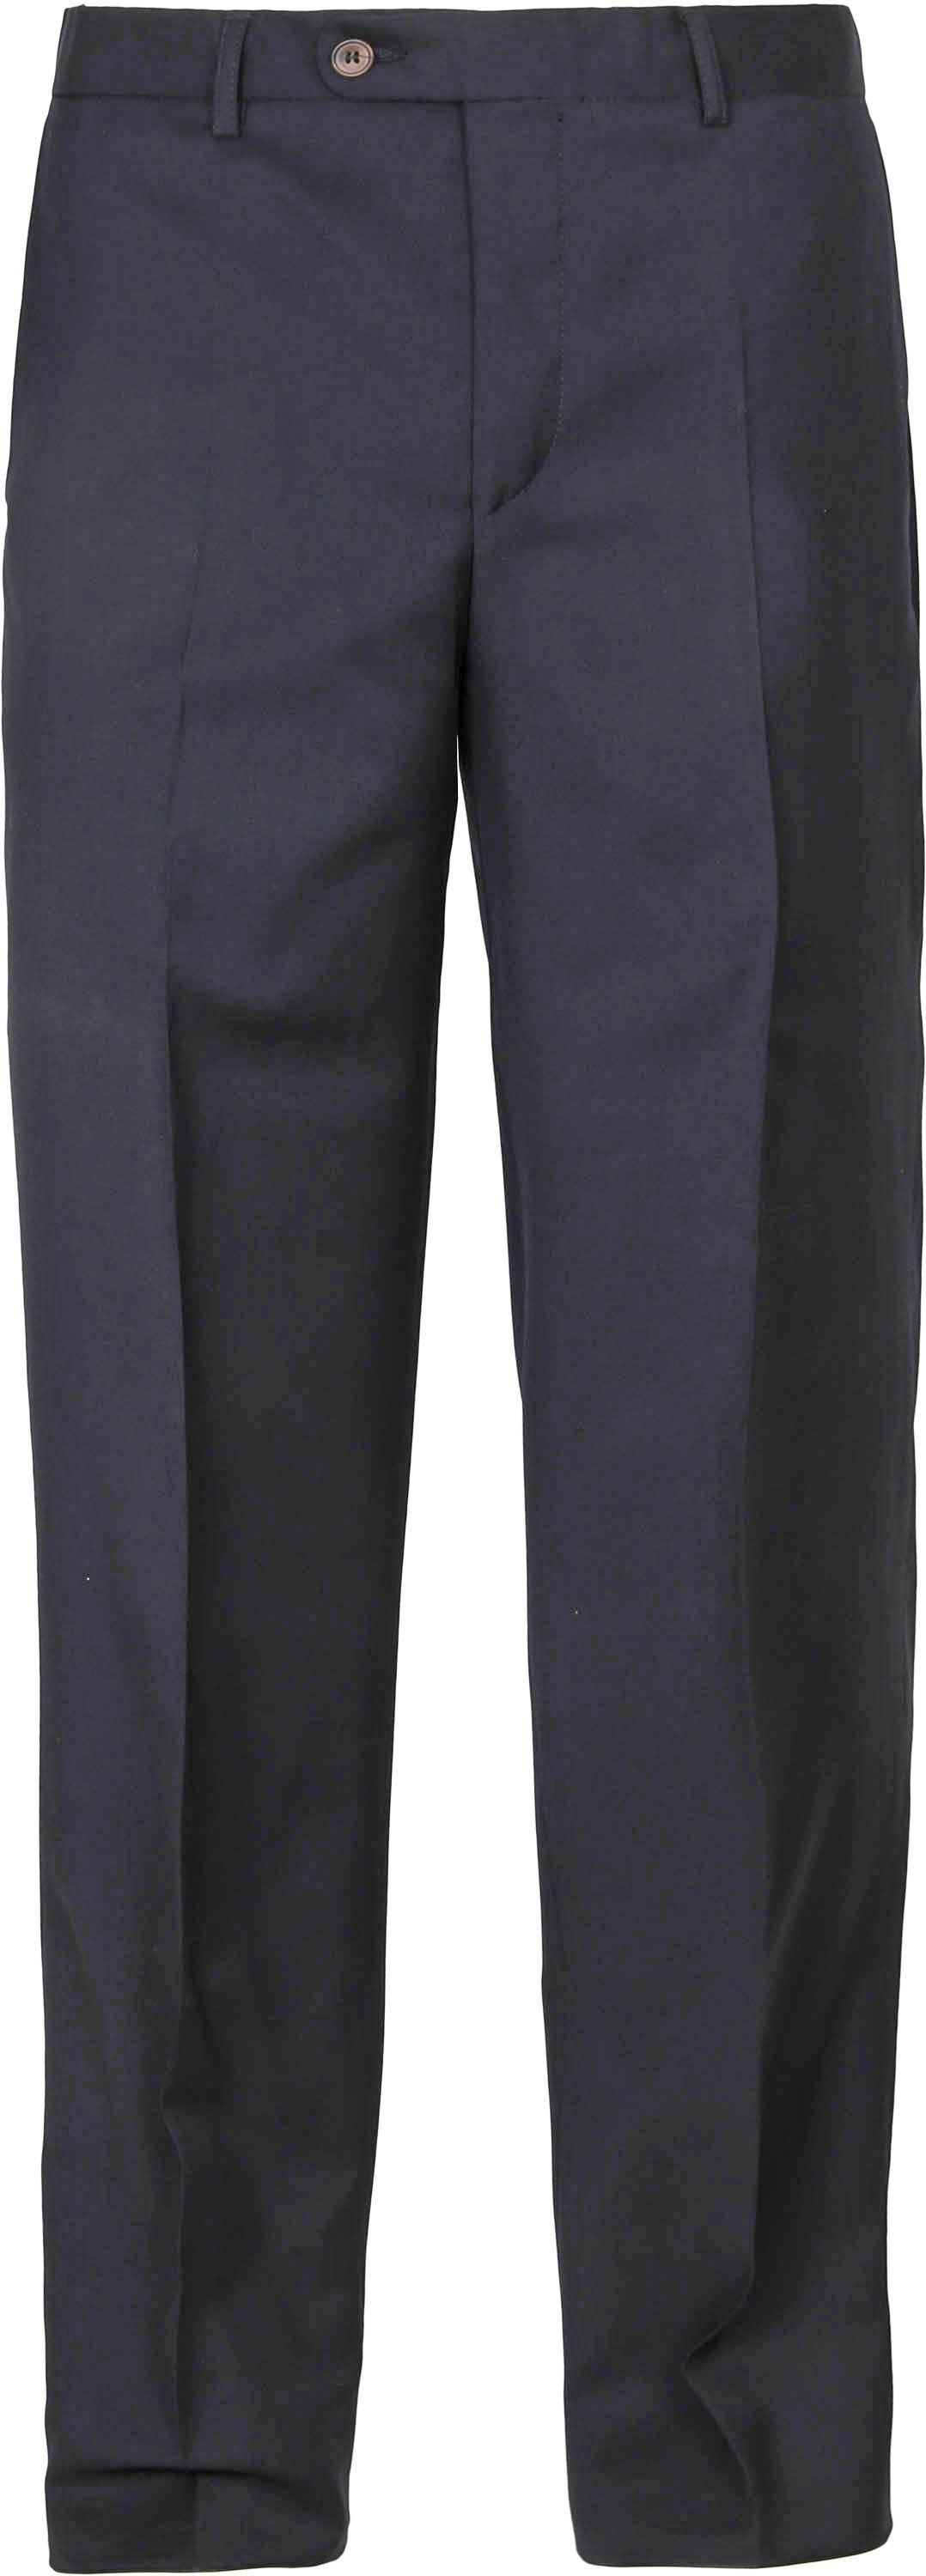 Suitable Pantalon Viga Foncé Bleu Bleu foncé taille 24